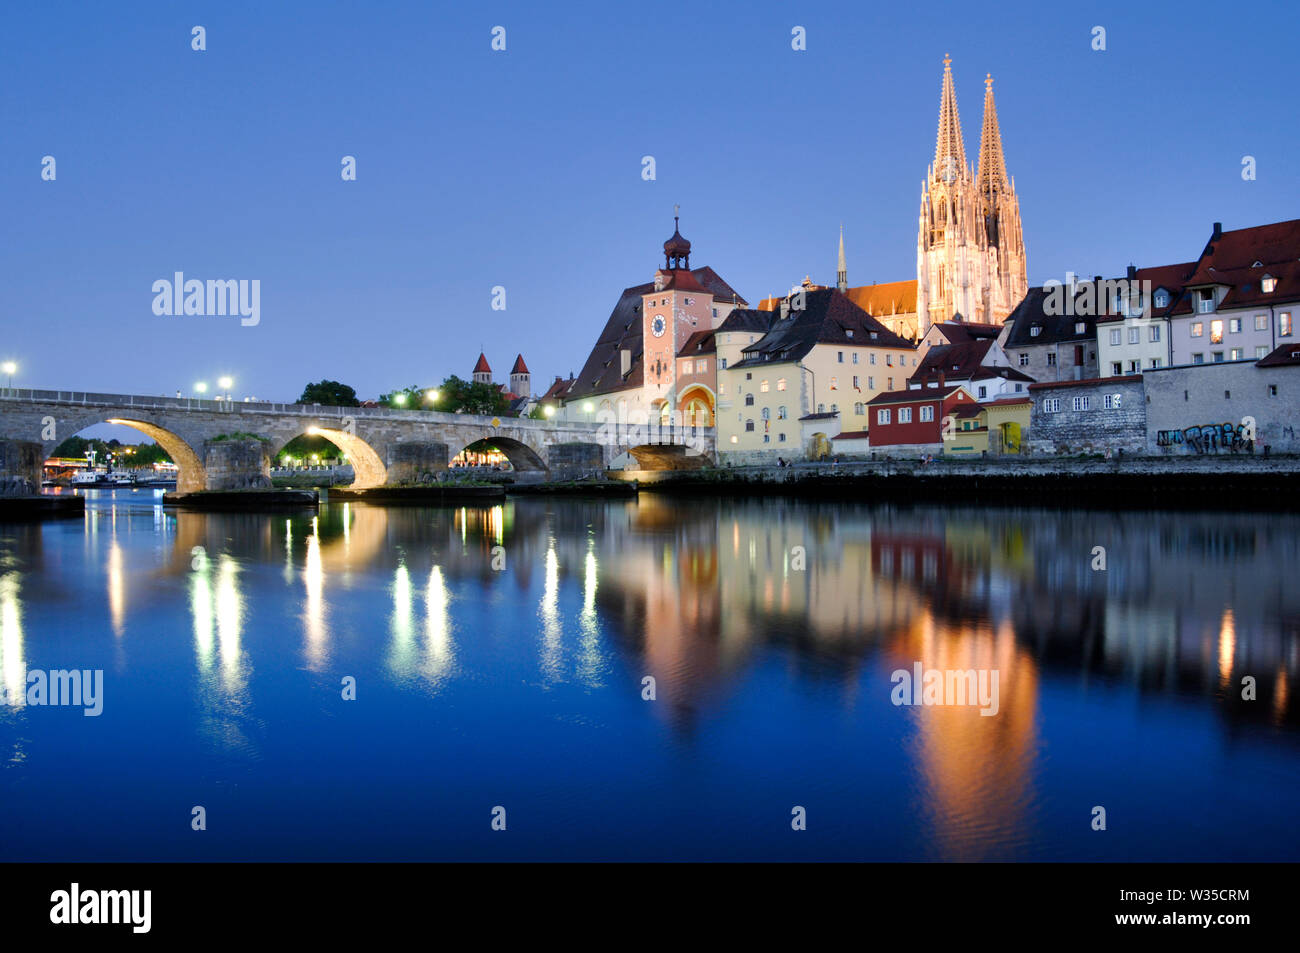 UNESCO heritage city Regensburg in Bavaria, Germany Stock Photo